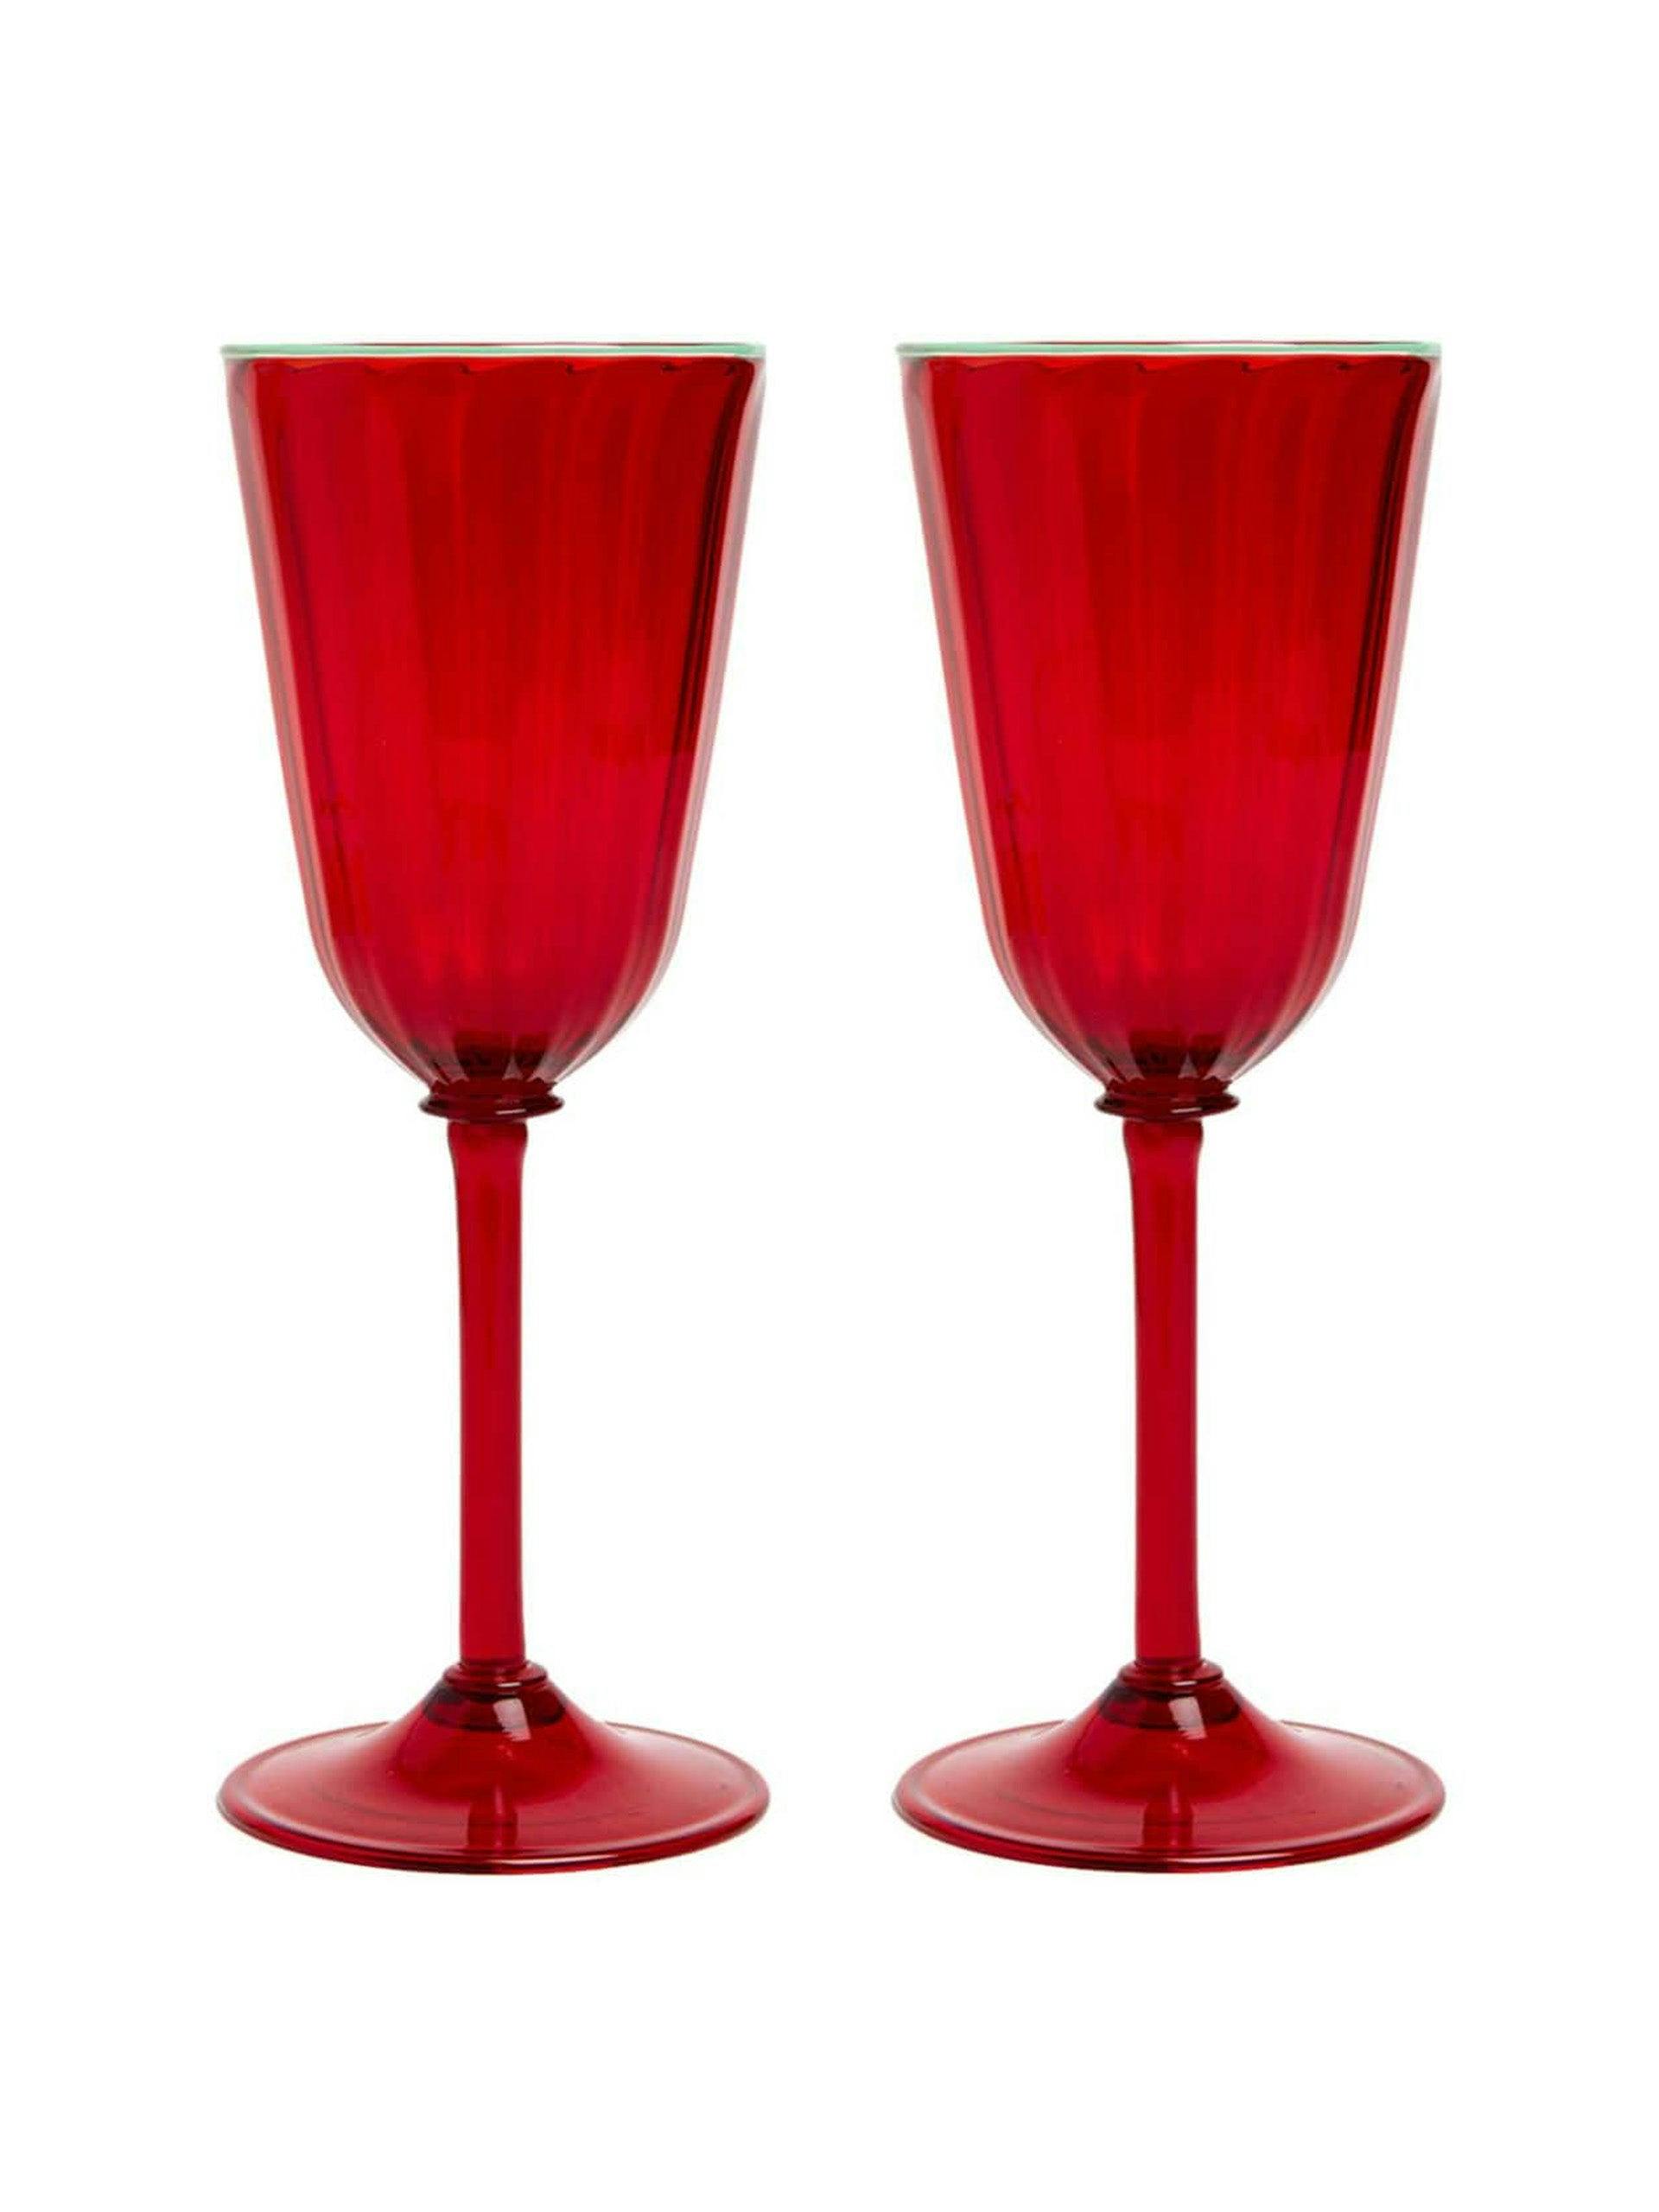 Rainbow wine glasses (set of 2)